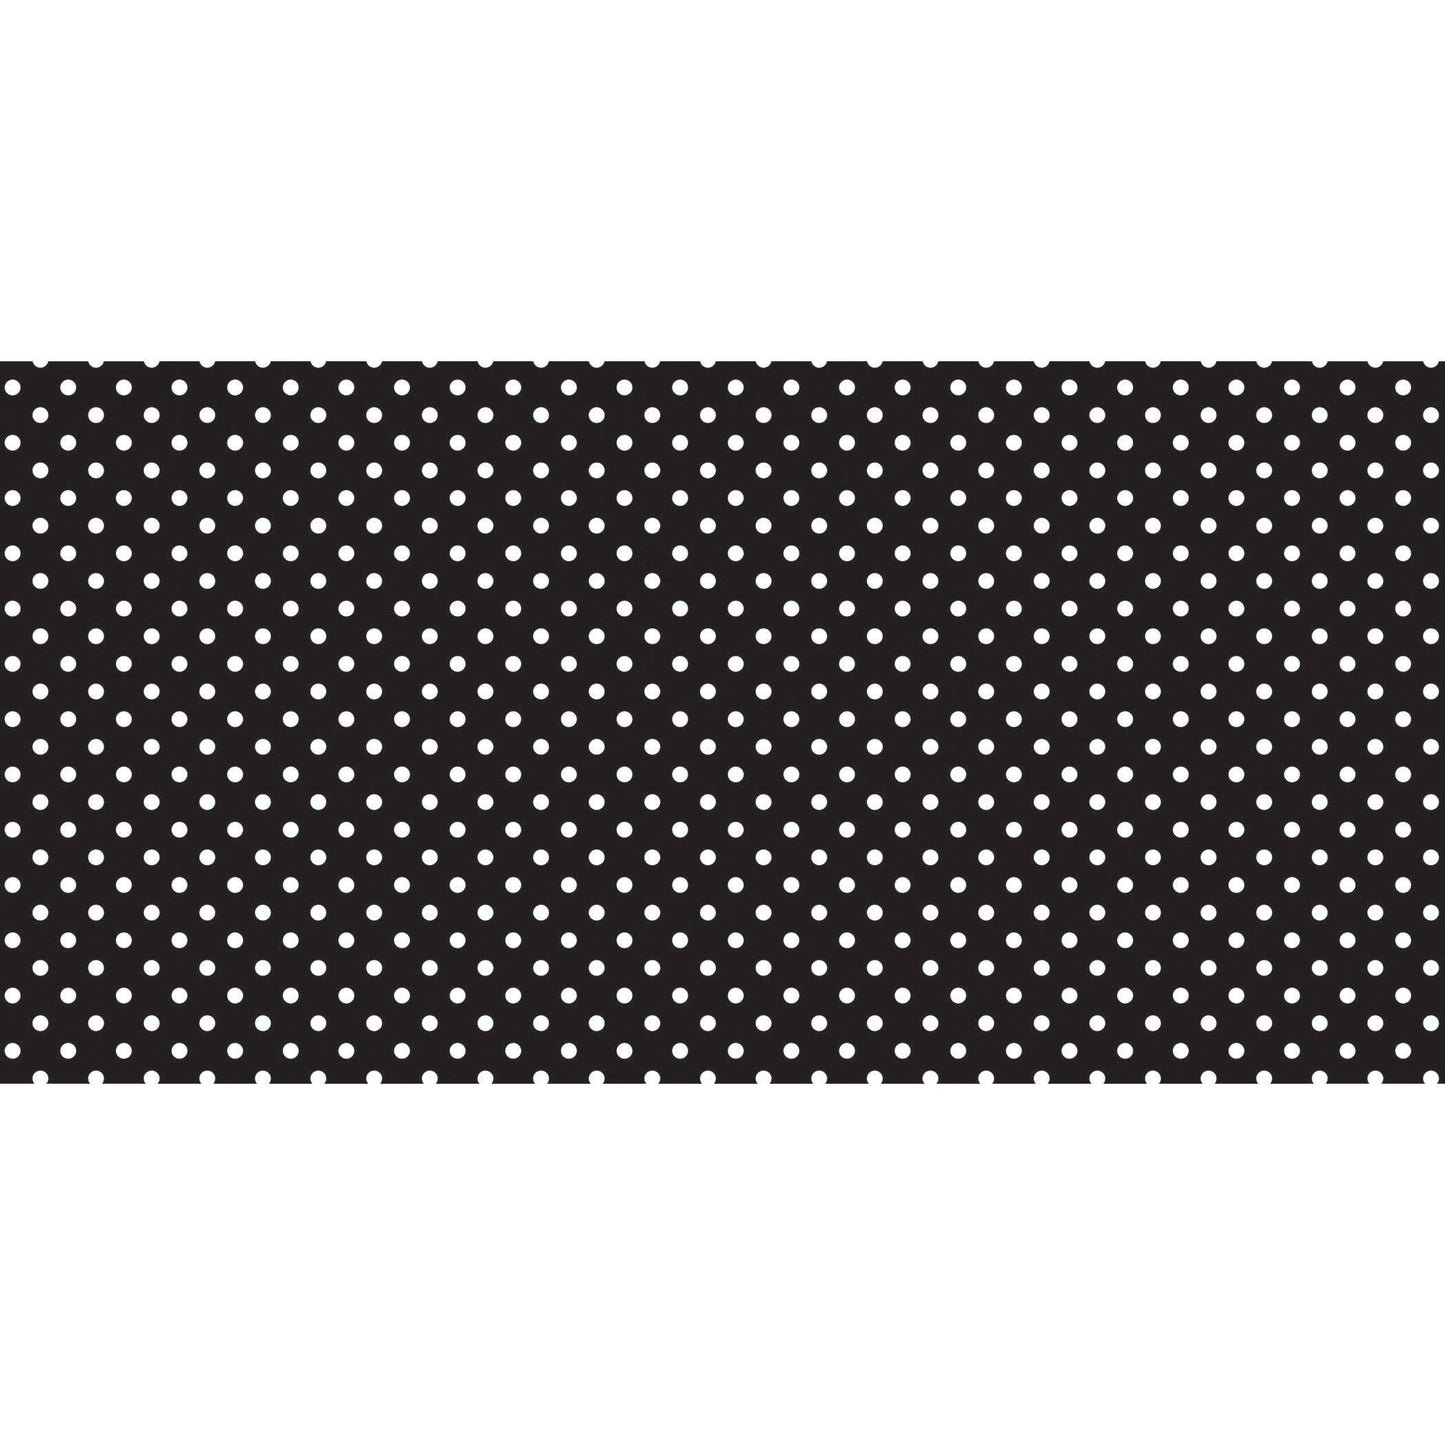 Bulletin Board Art Paper, Classic Dots-Black & White, 48" x 50', 1 Roll - Loomini